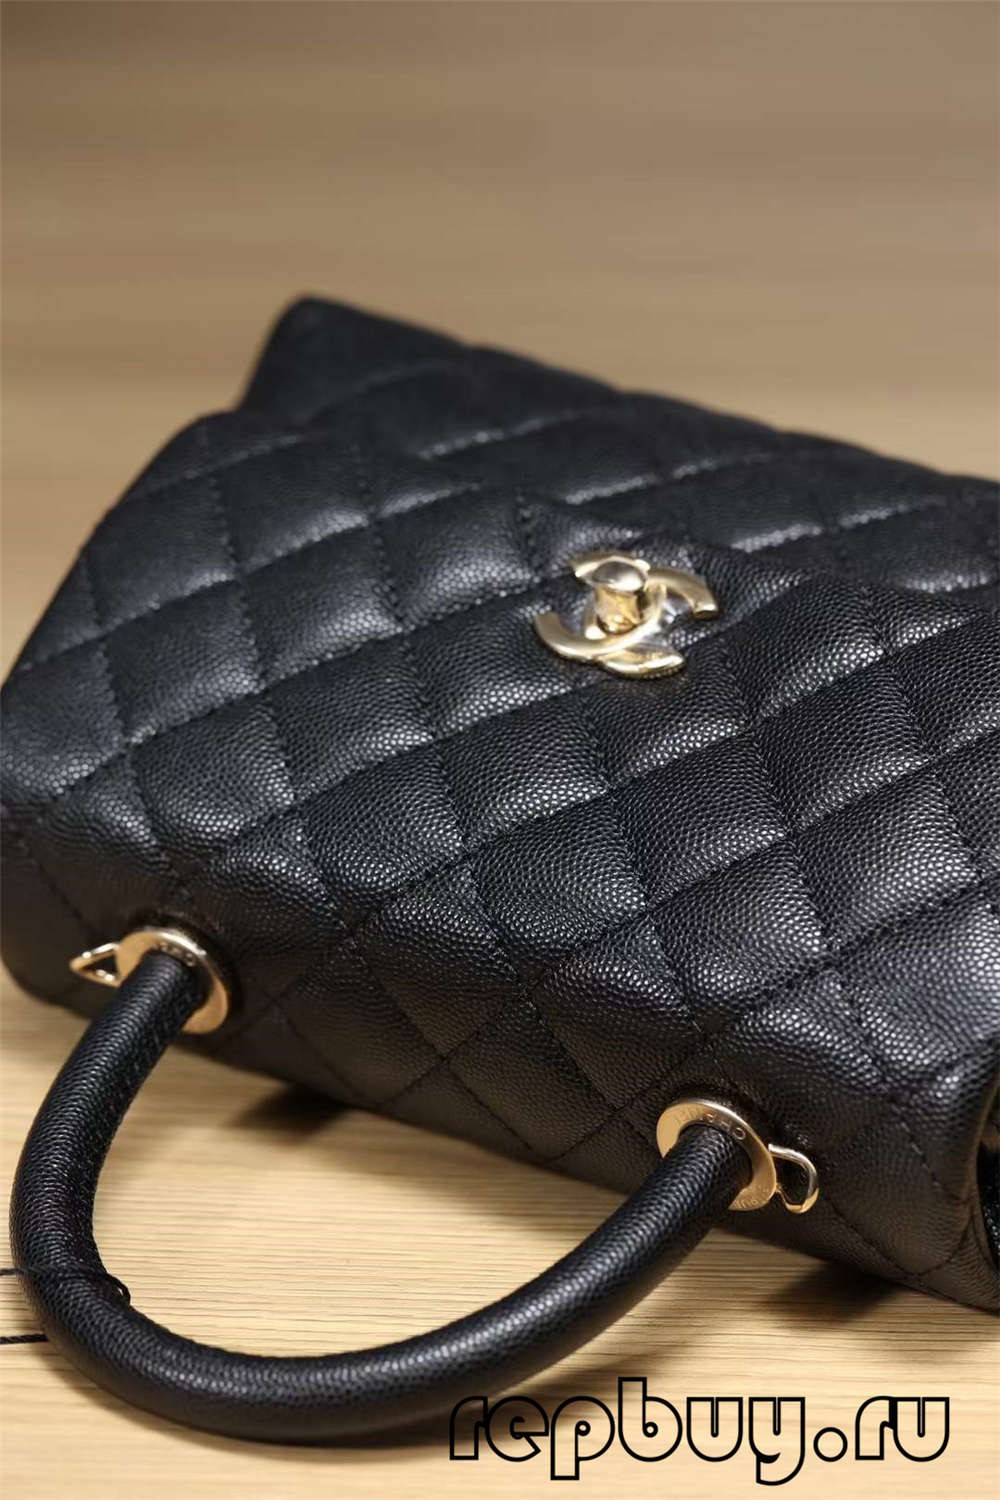 Najvyššia replika kabelky Chanel Coco Handle Black Gold so sponou (aktualizované v roku 2022) – online obchod s falošnou taškou Louis Vuitton najvyššej kvality, replika značkovej tašky ru